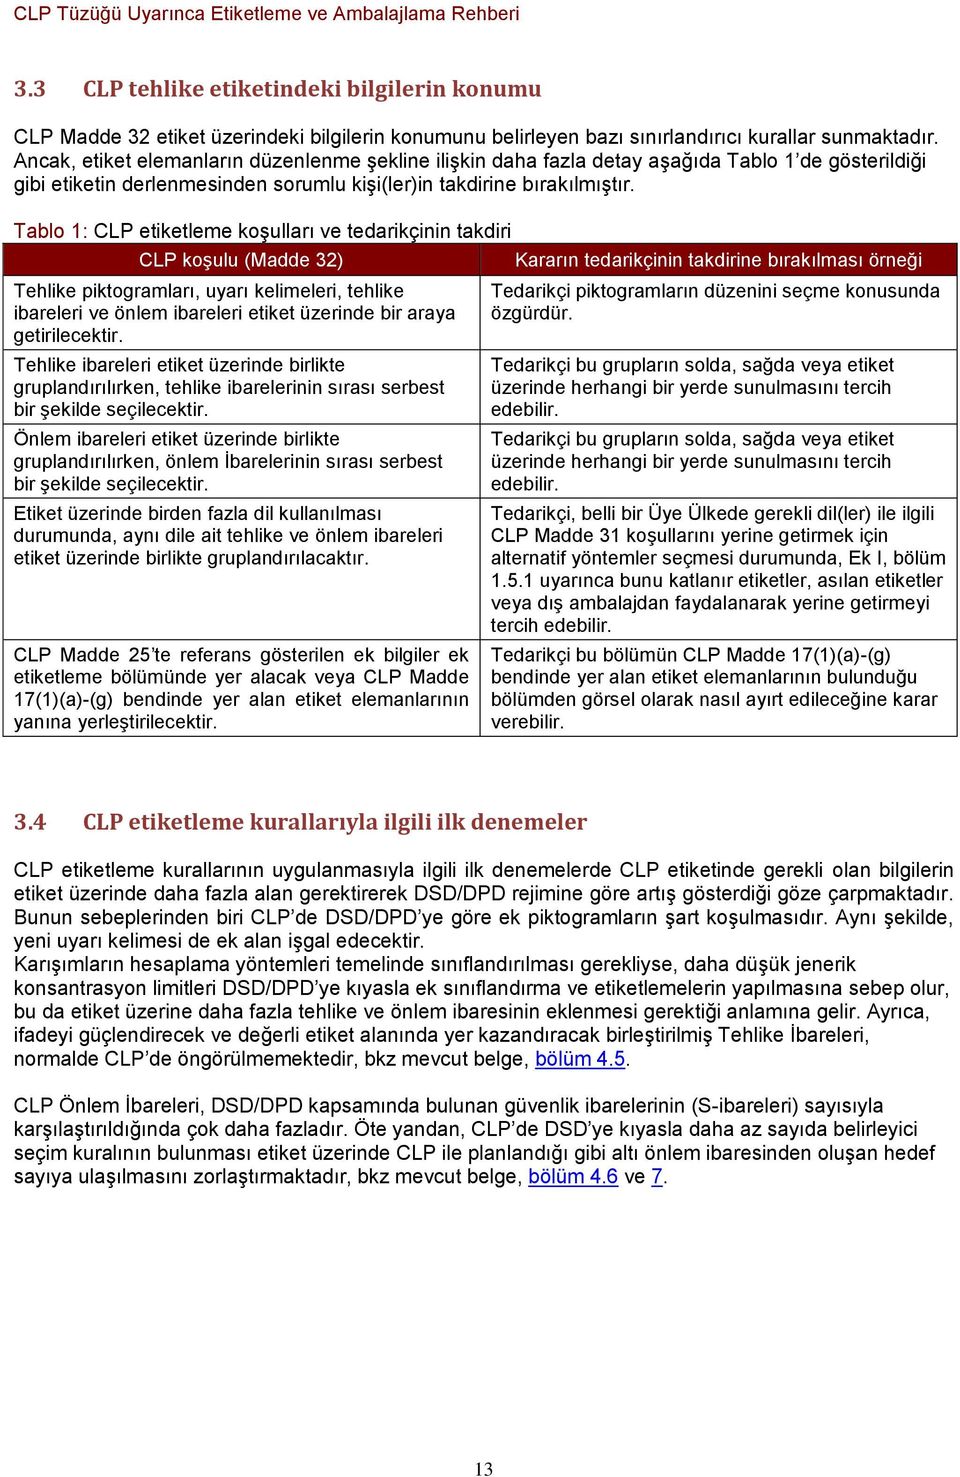 Tablo 1: CLP etiketleme koģulları ve tedarikçinin takdiri CLP koģulu (Madde 32) Kararın tedarikçinin takdirine bırakılması örneği Tehlike piktogramları, uyarı kelimeleri, tehlike ibareleri ve önlem